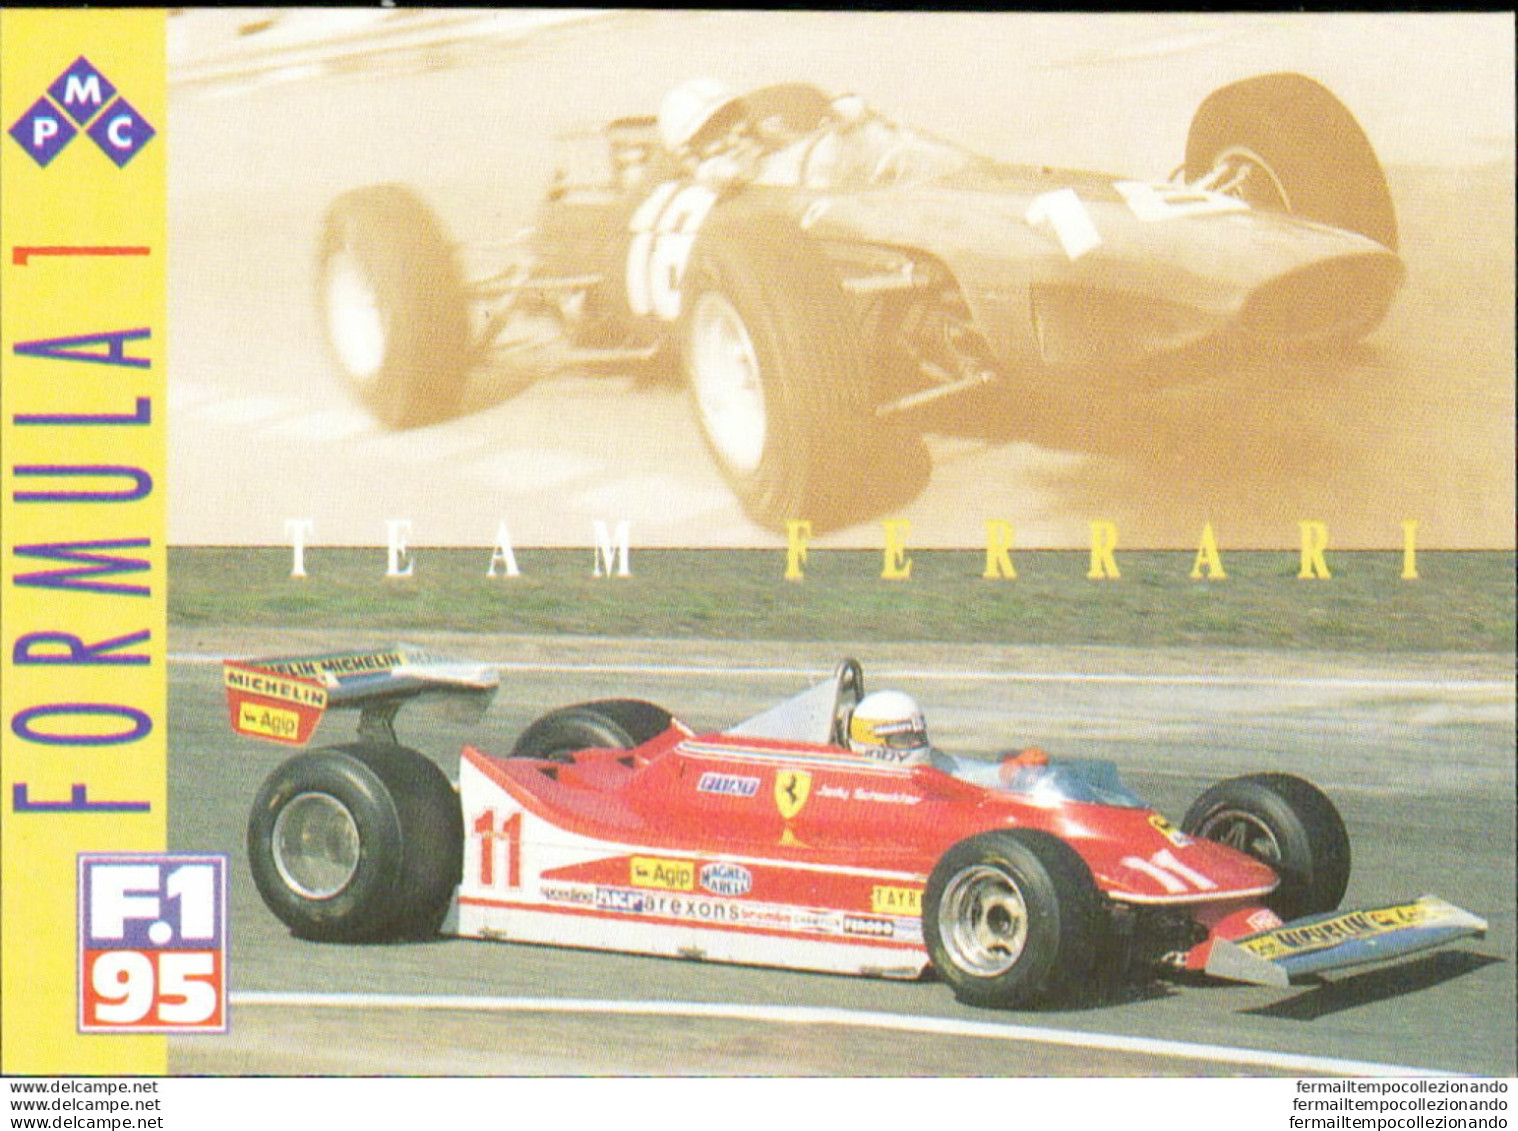 Bh49 1995 Formula 1 Gran Prix Collection Card Ferrari Team N 49 - Catalogues